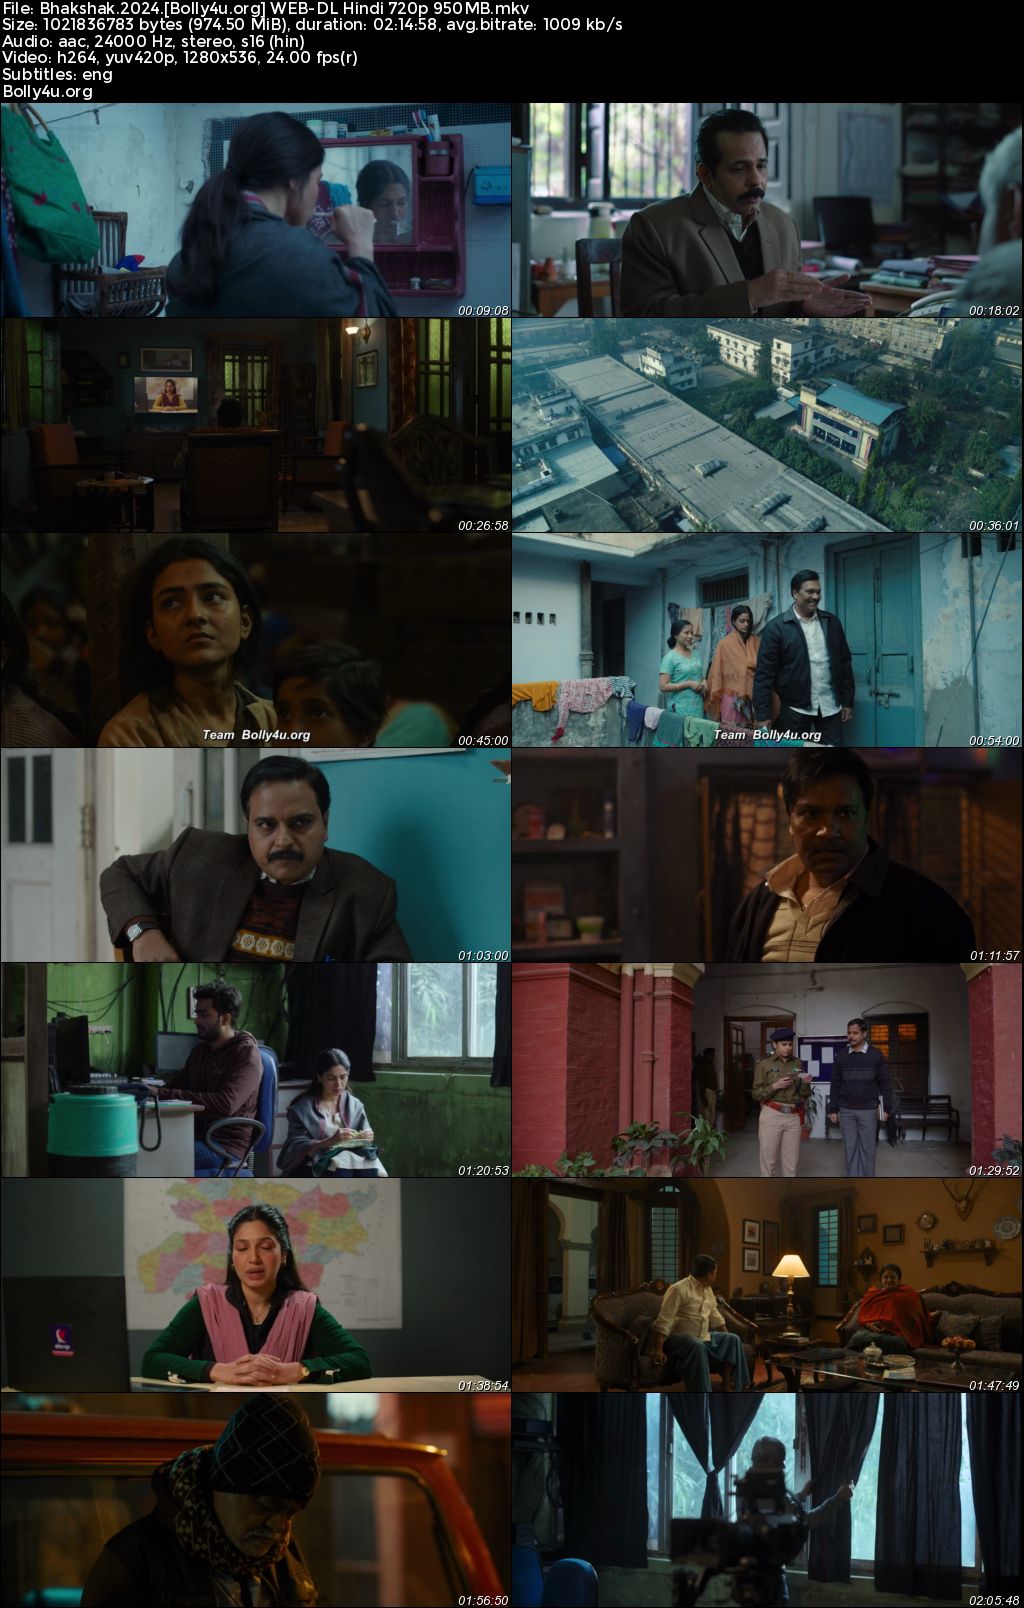 Bhakshak 2024 WEB-DL Hindi Full Movie Download 1080p 720p 480p